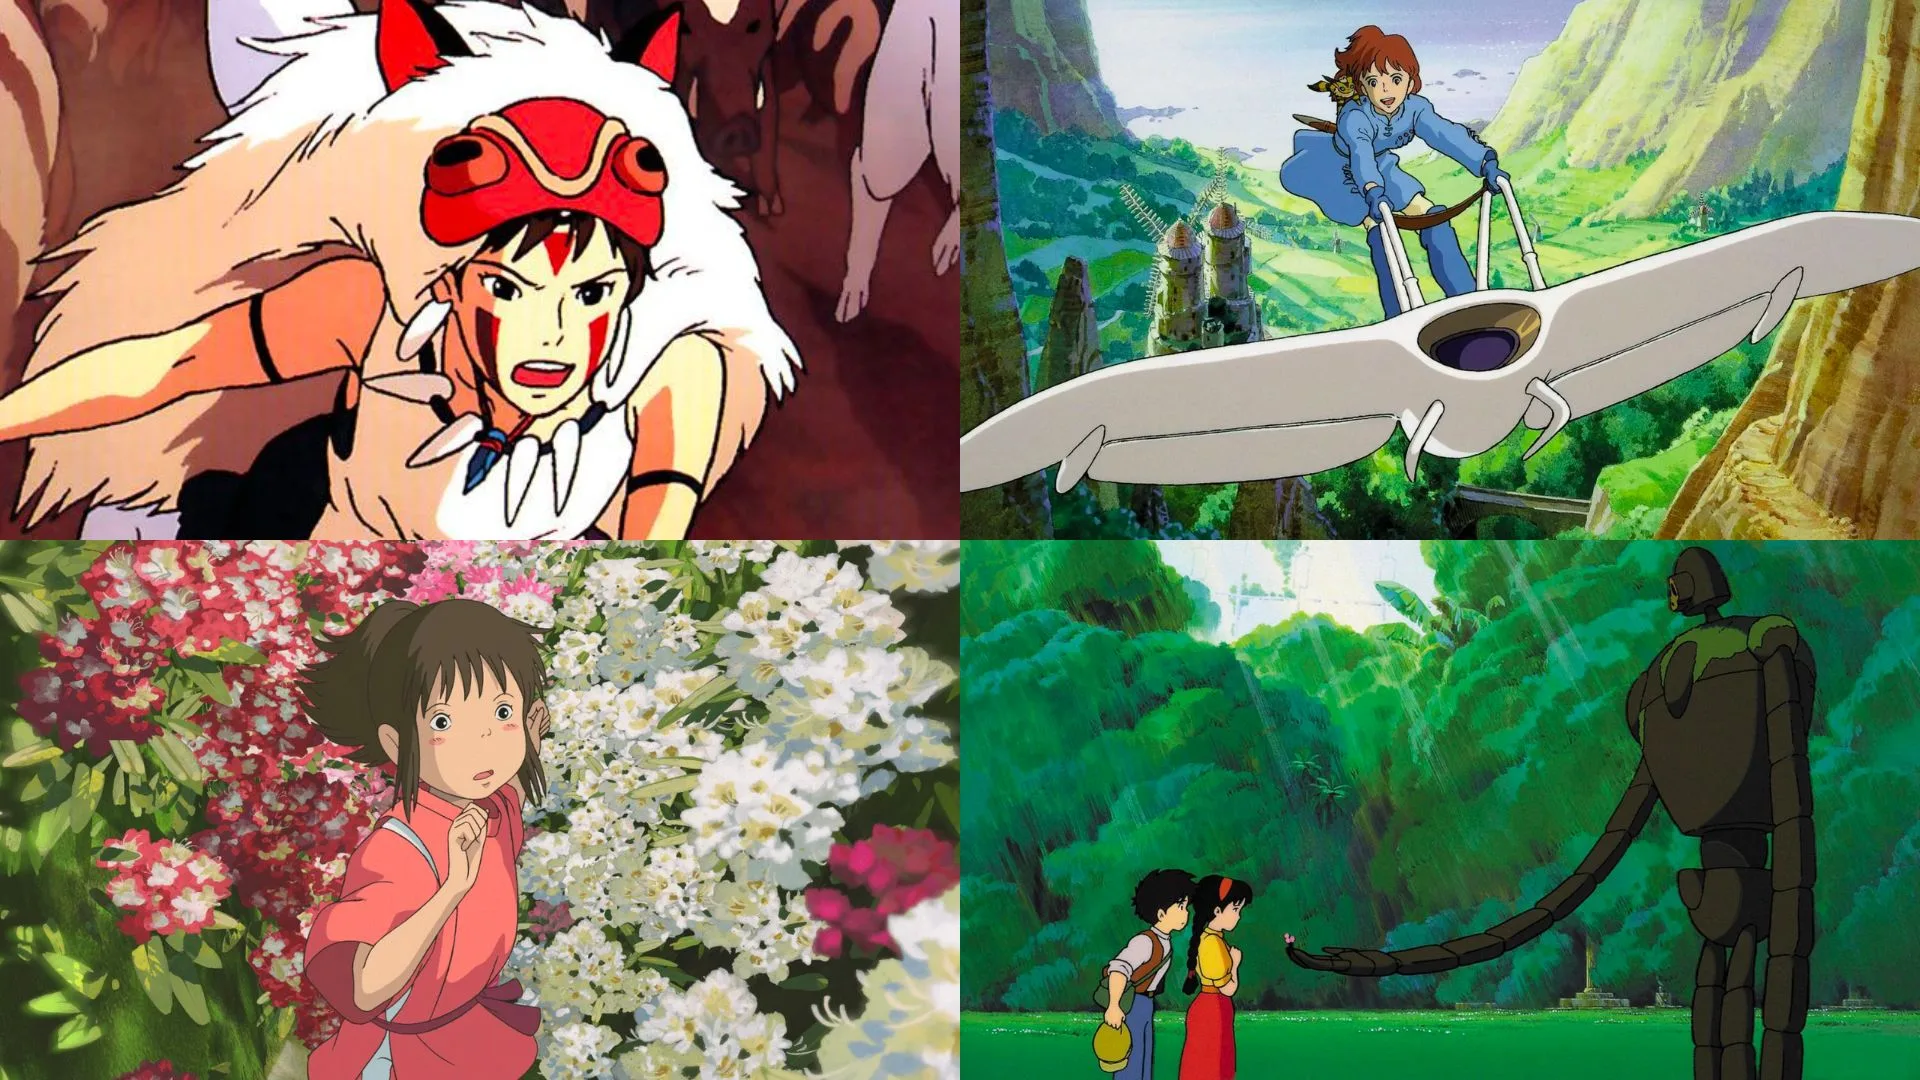 La obra de Miyzaki puede compararse con cienasta como Lynch o Fellini